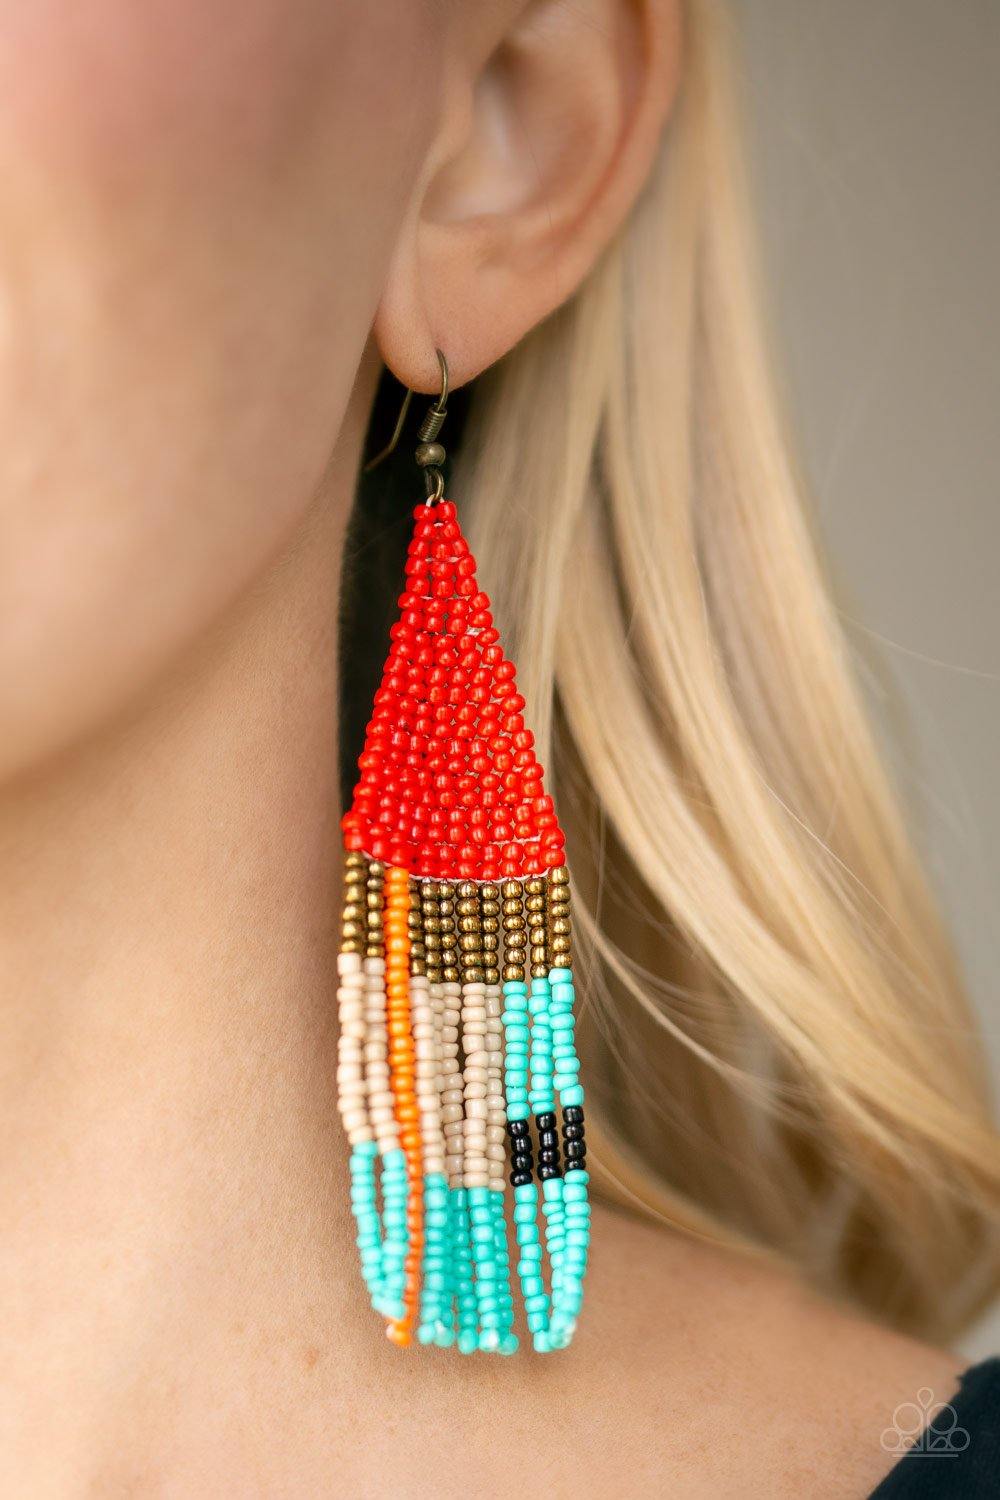 Beaded Boho Red Earrings - Nothin' But Jewelry by Mz. Netta